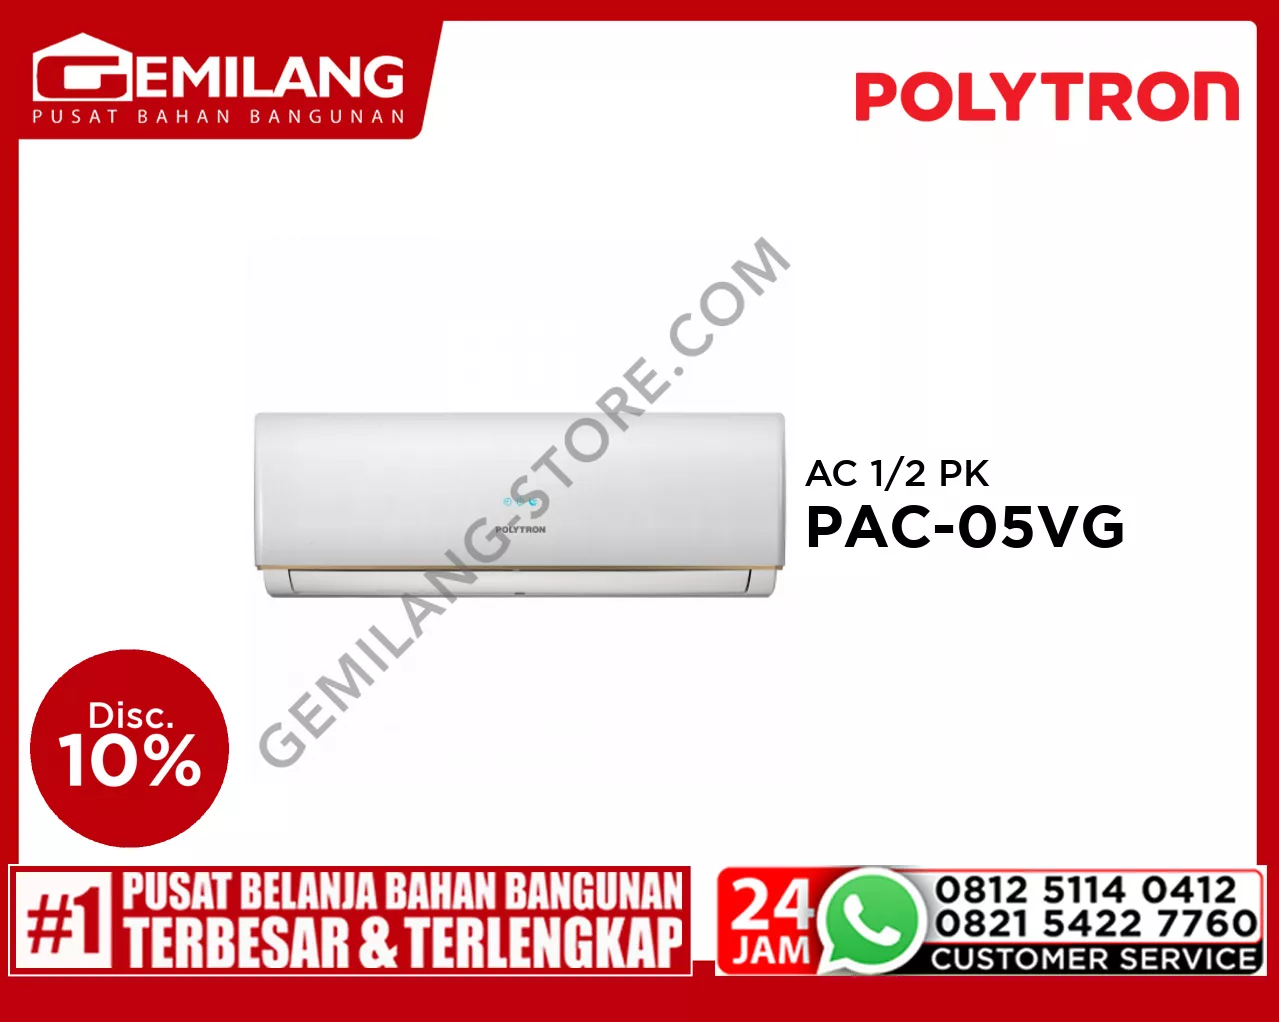 POLYTRON AC PAC-05VG 1/2 PK